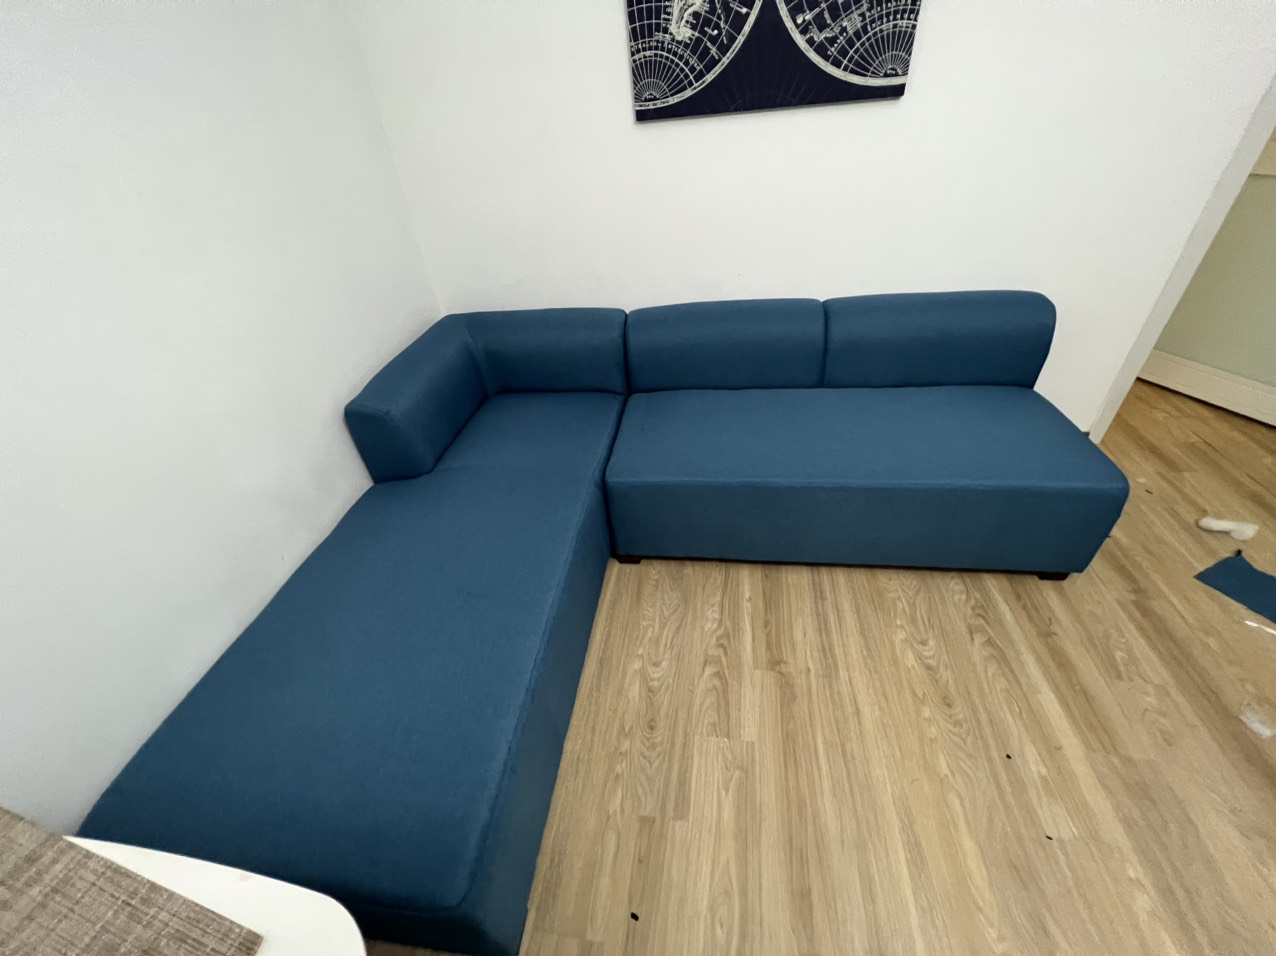 Sofa reupholstering